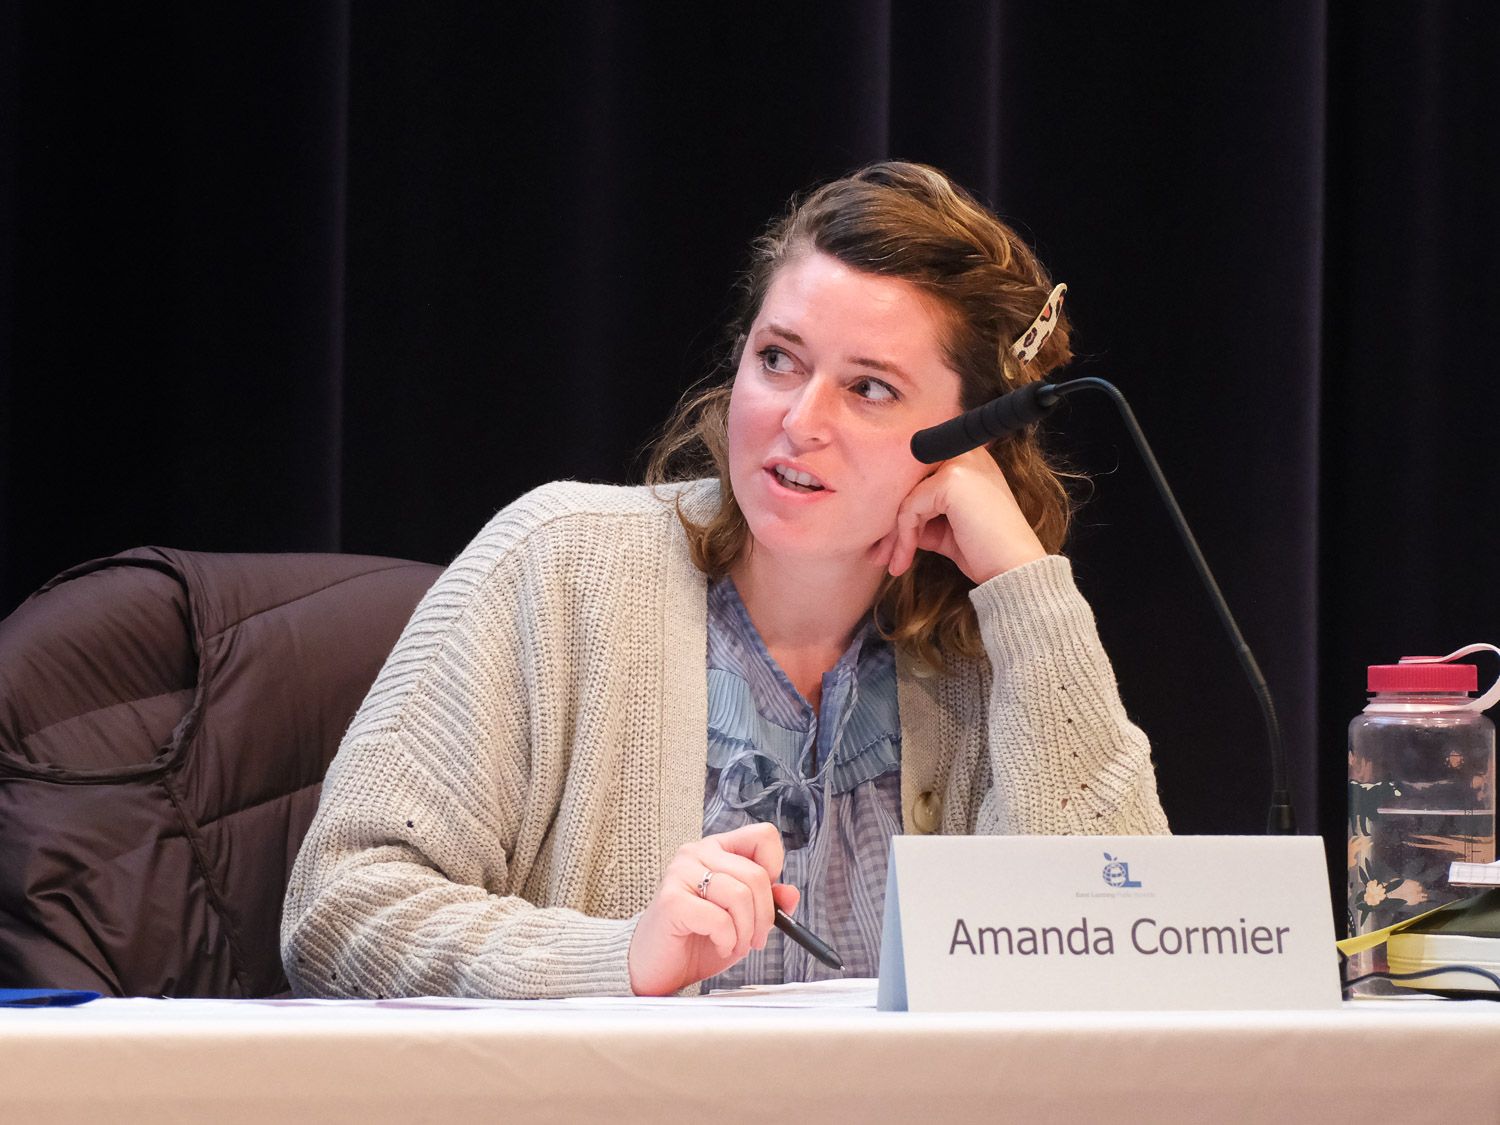 Amanda Cormier Resigns From EL School Board